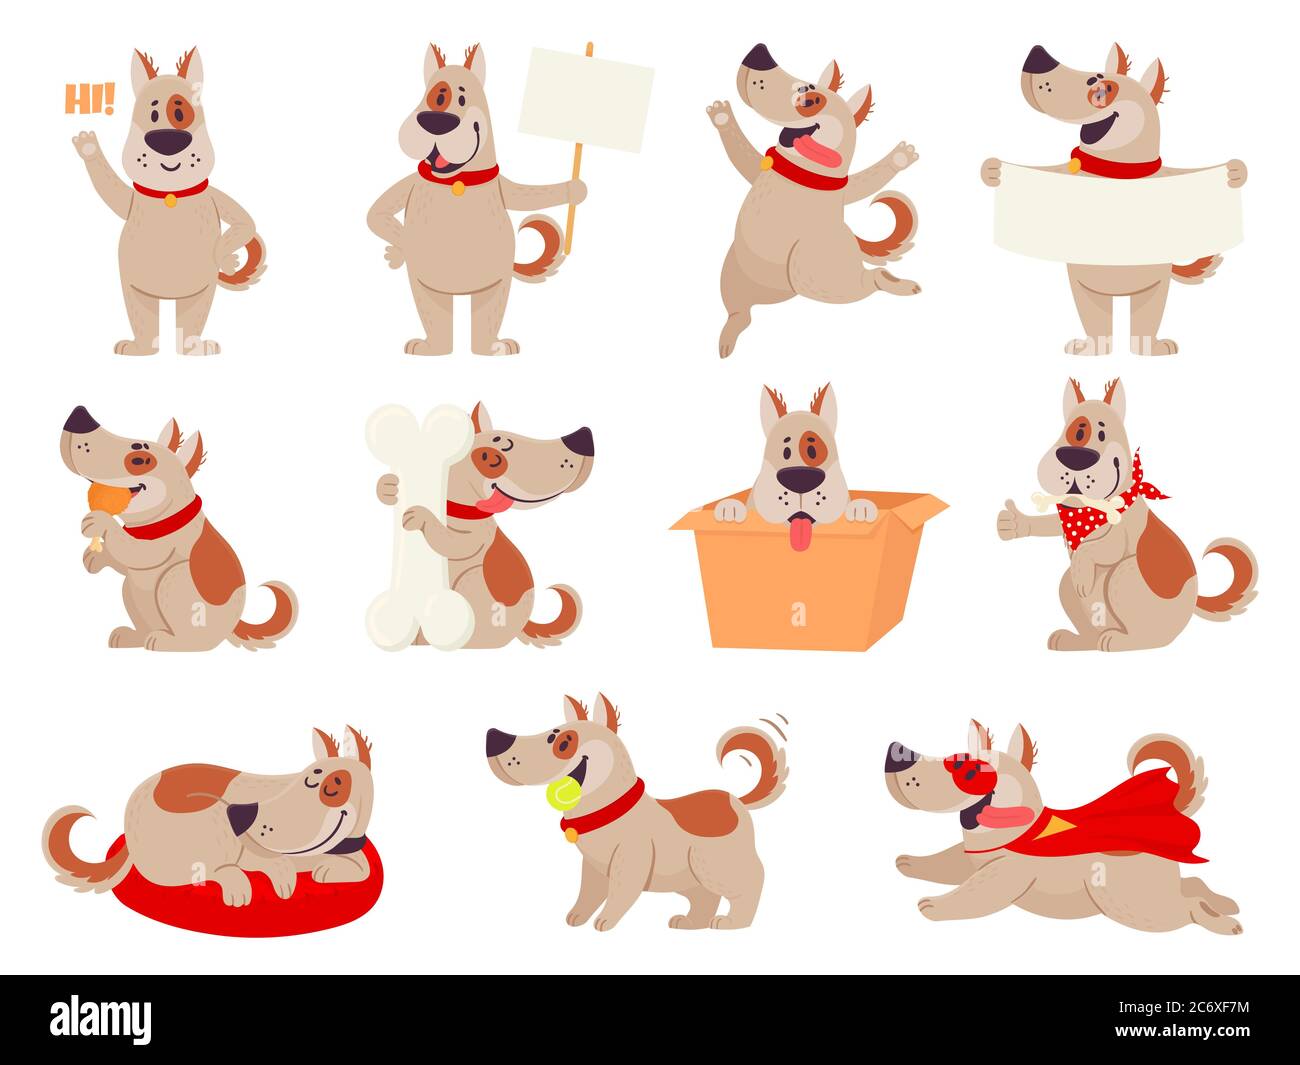 Cartoon Hund Maskottchen. Nette Hunde in verschiedenen Aktionen und Emotionen, glücklich Lächeln freundliches Verhalten Haustier, Charakter lustig Avatar Vektor-Set Stock Vektor